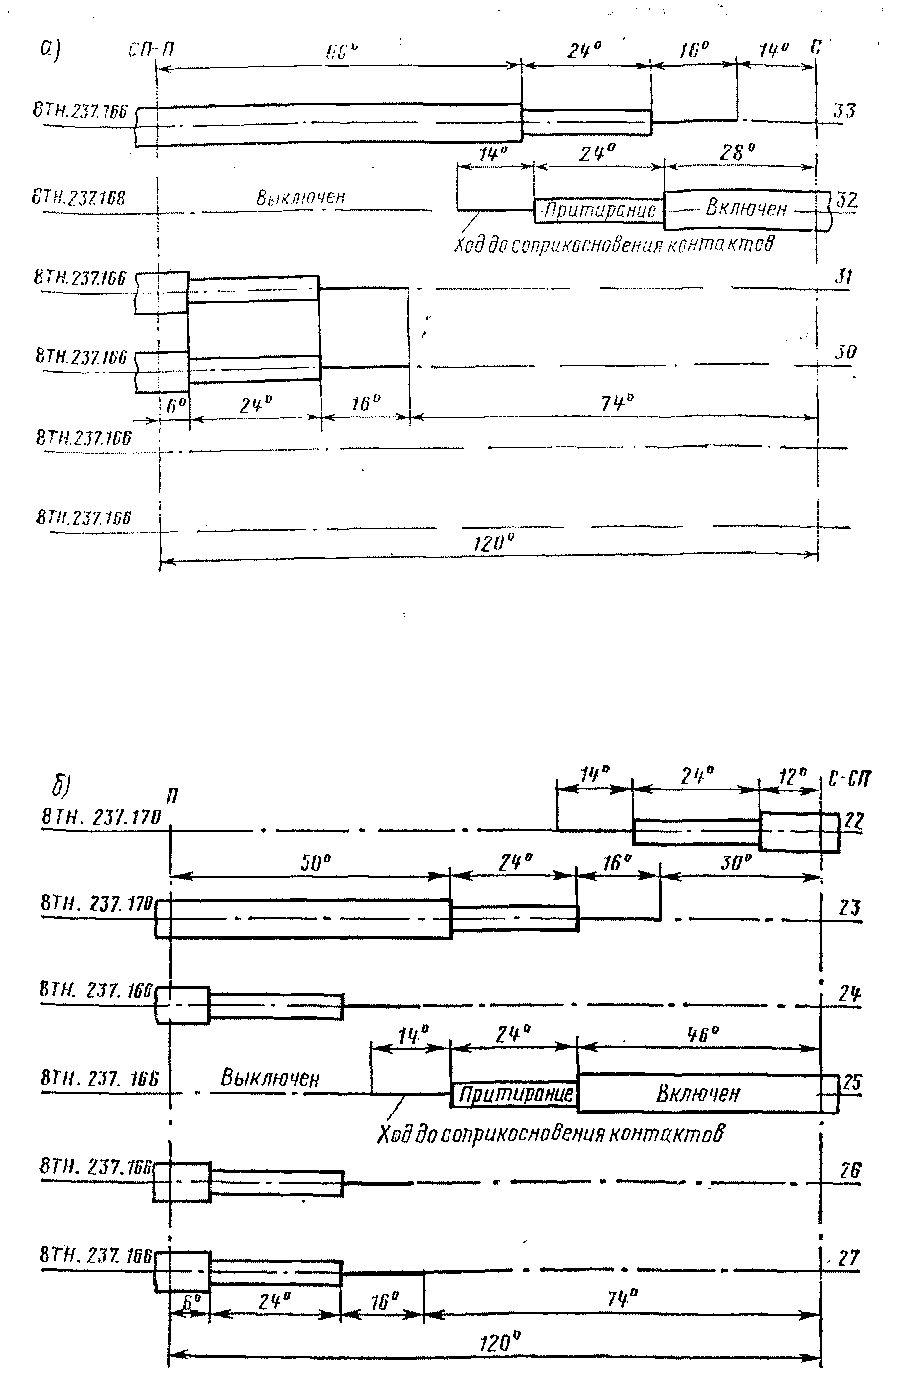 Диаграммы замыкания контактов контакторных элементов переключателей ПКХ-4Б (а) н ПКГ-6Г (б)